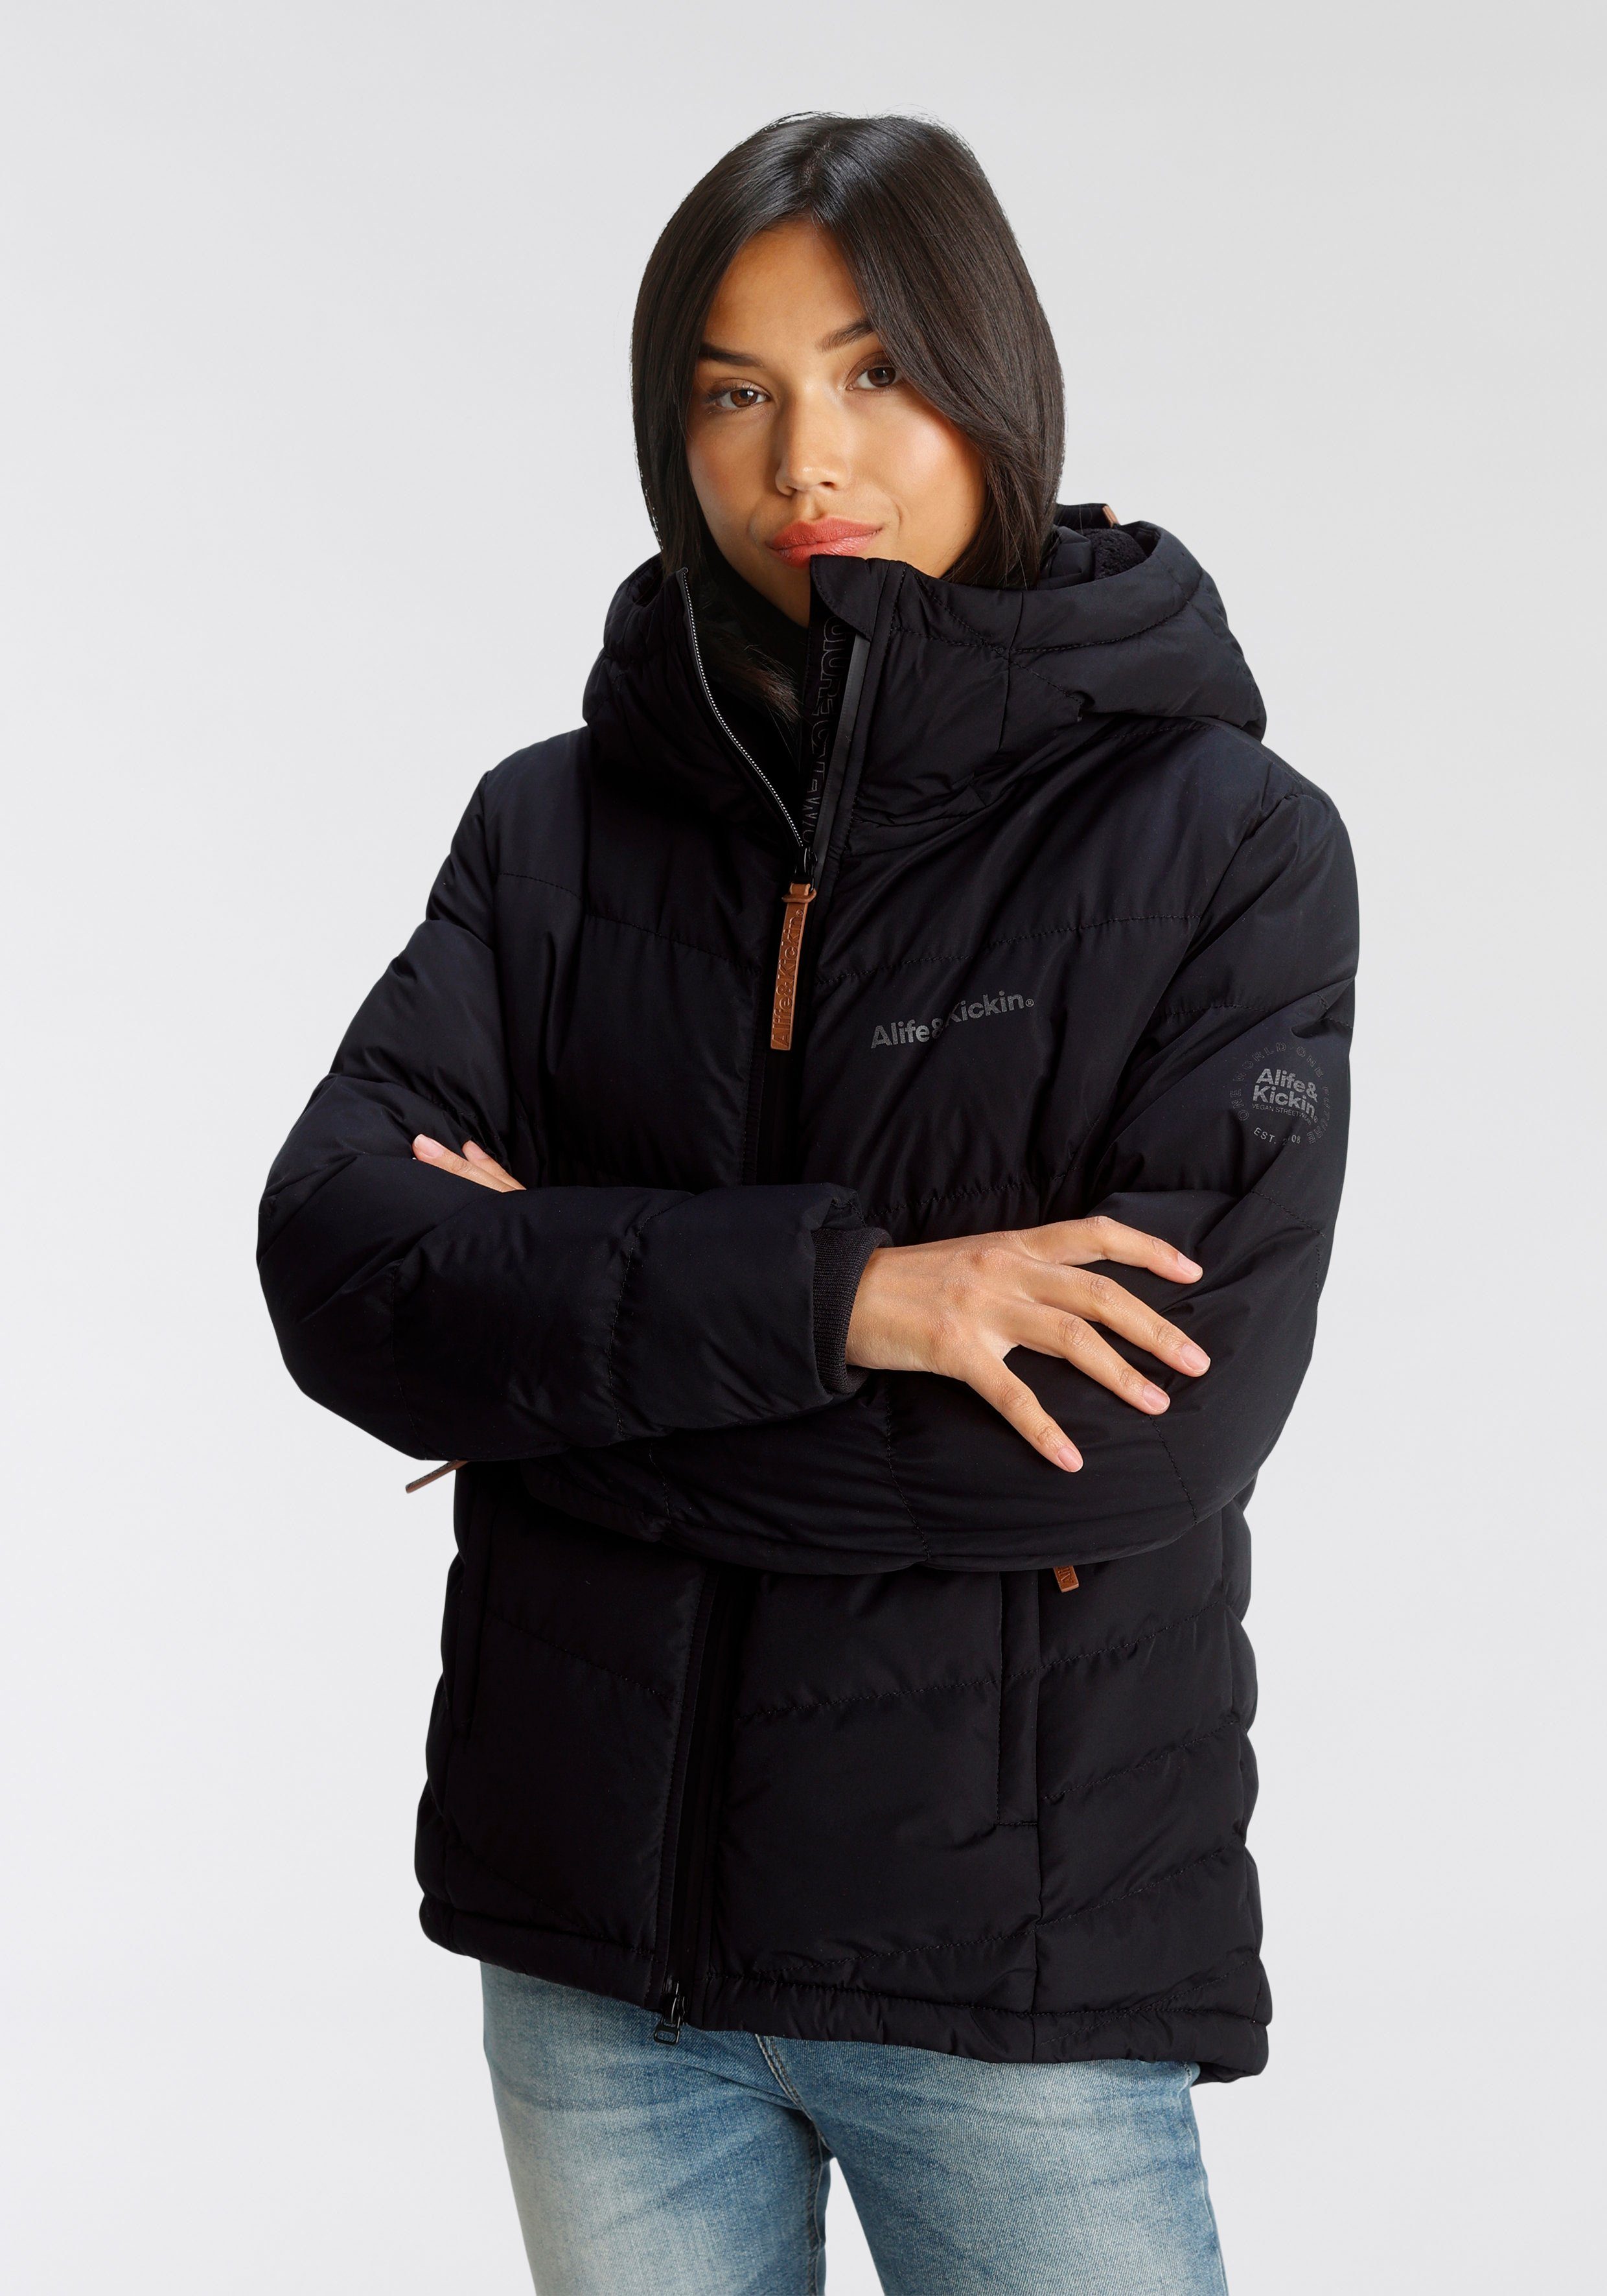 Günstige Jacken für Damen online kaufen » Jacken SALE | OTTO